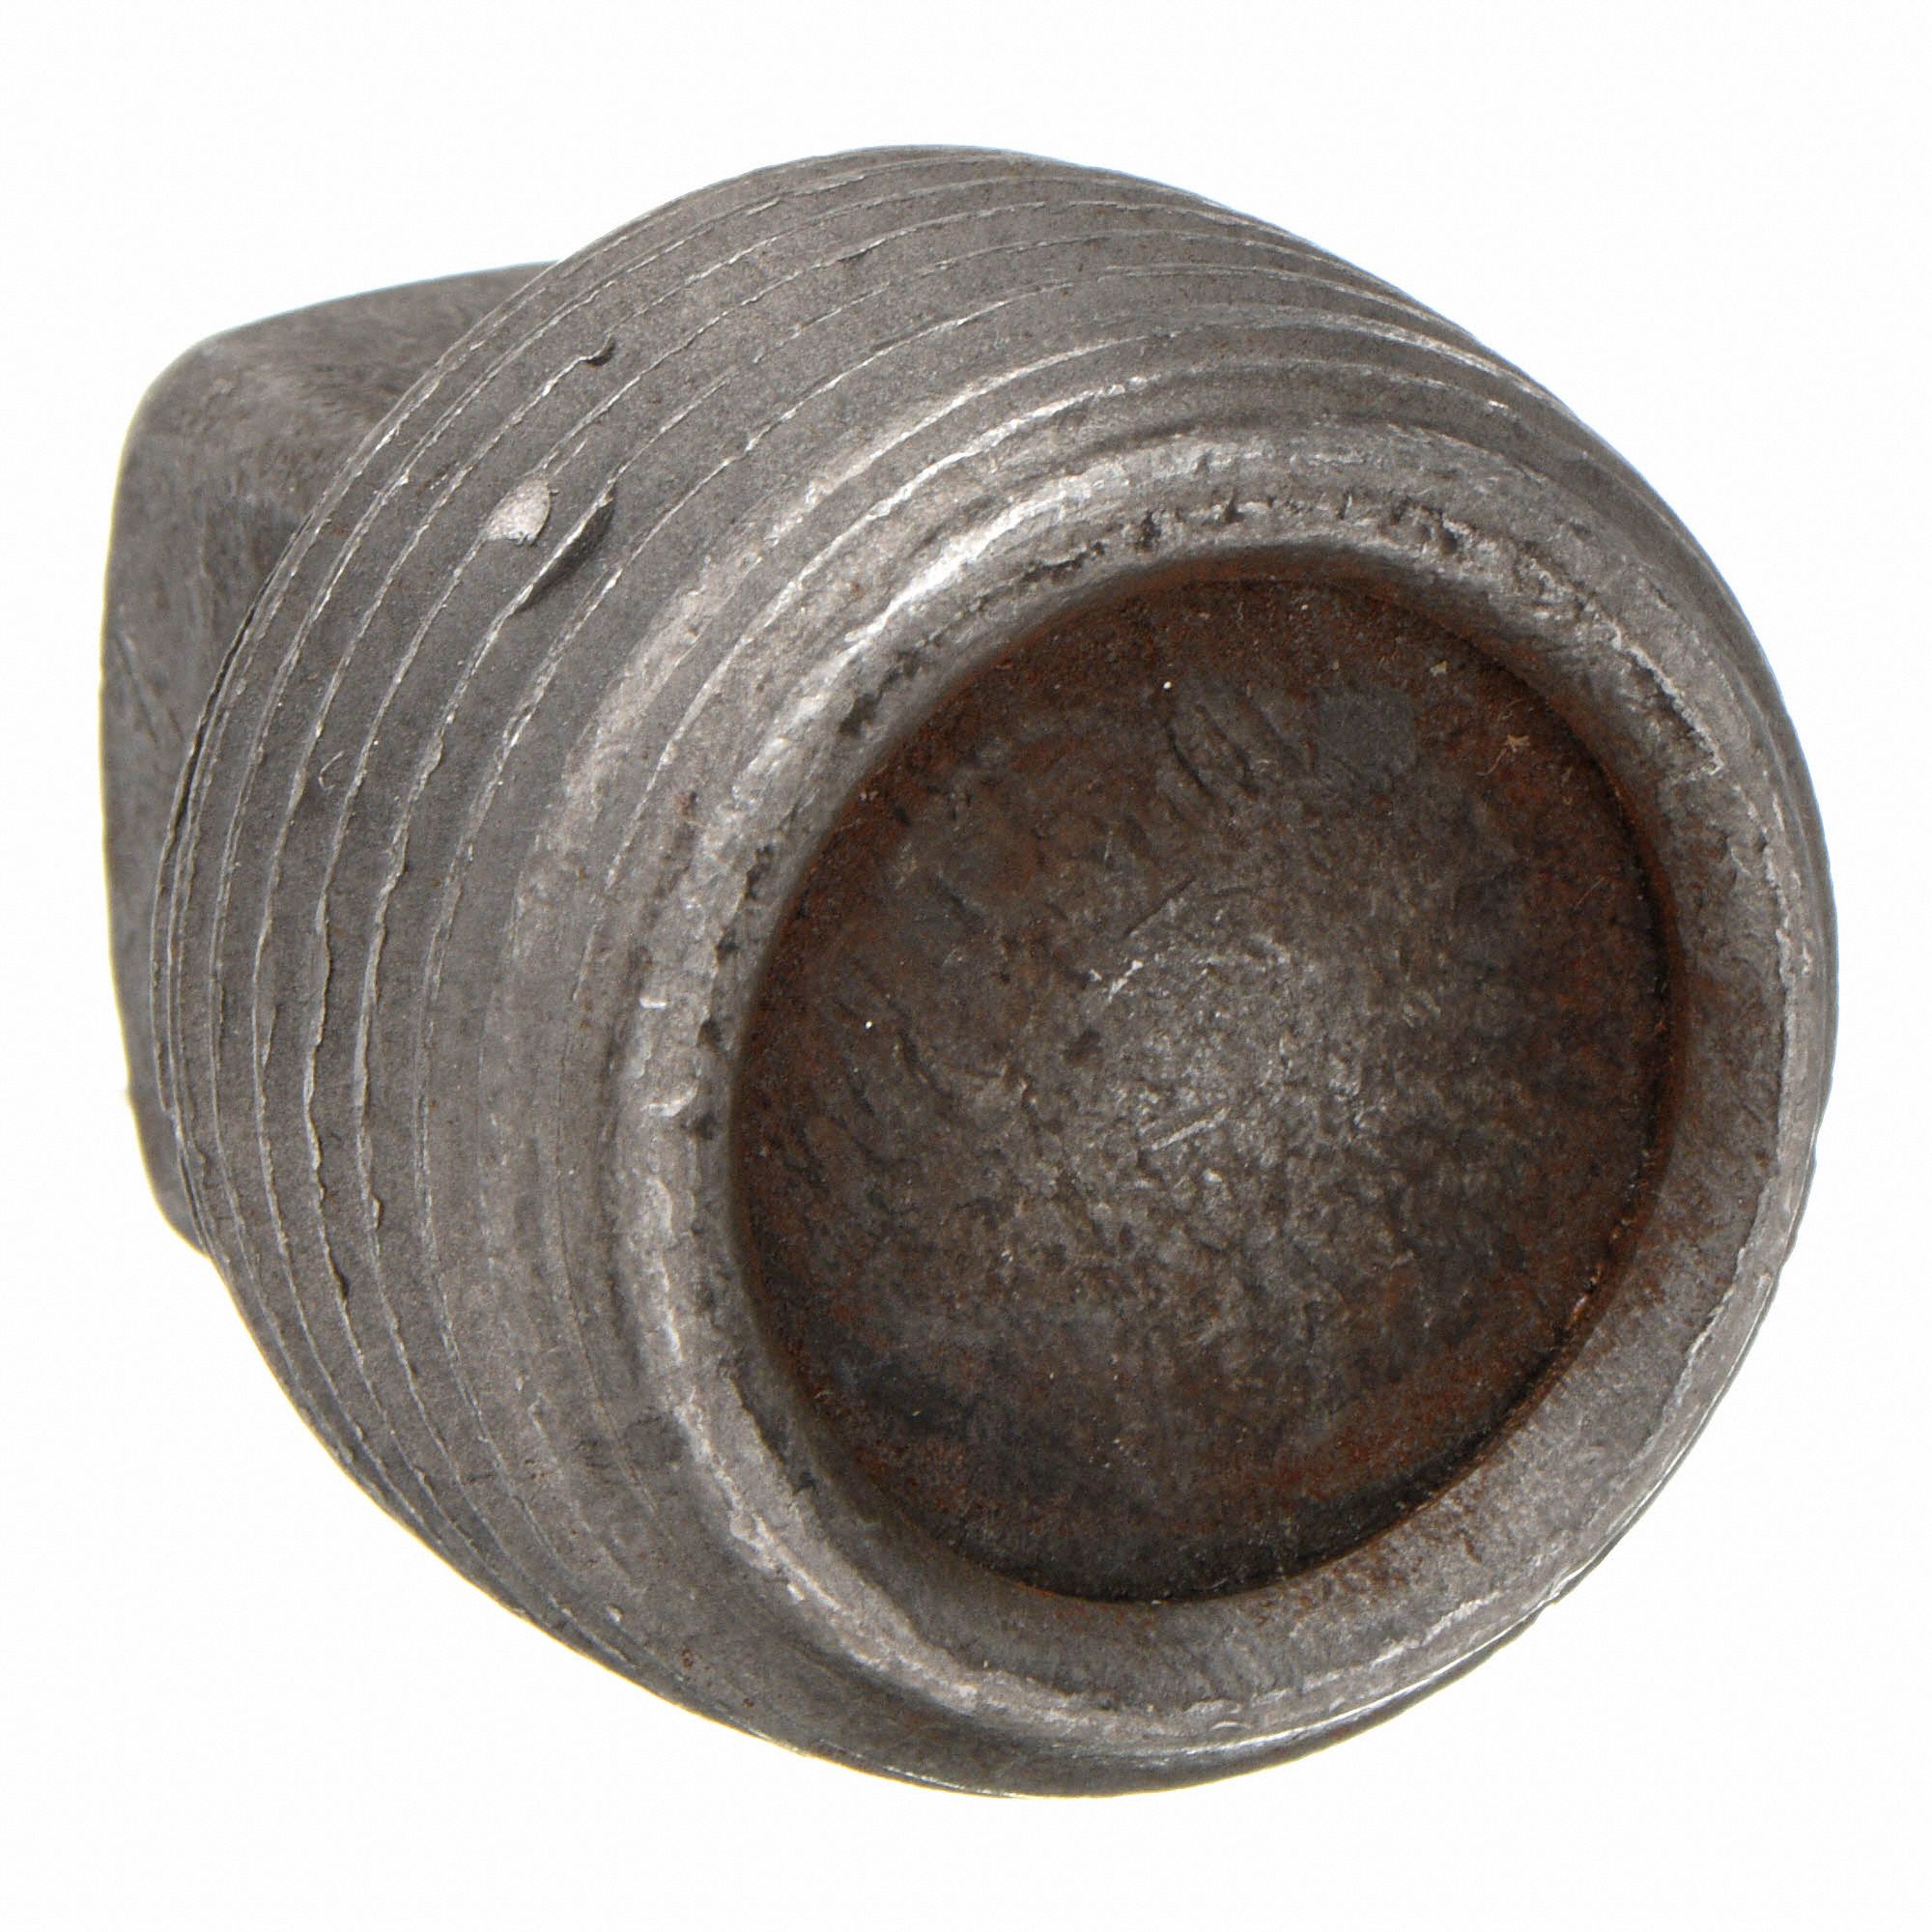 Square Head Plug 3/4 NPT Male Malleable Iron Pipe Fitting Anvil 8700159901 Galvanized Finish 